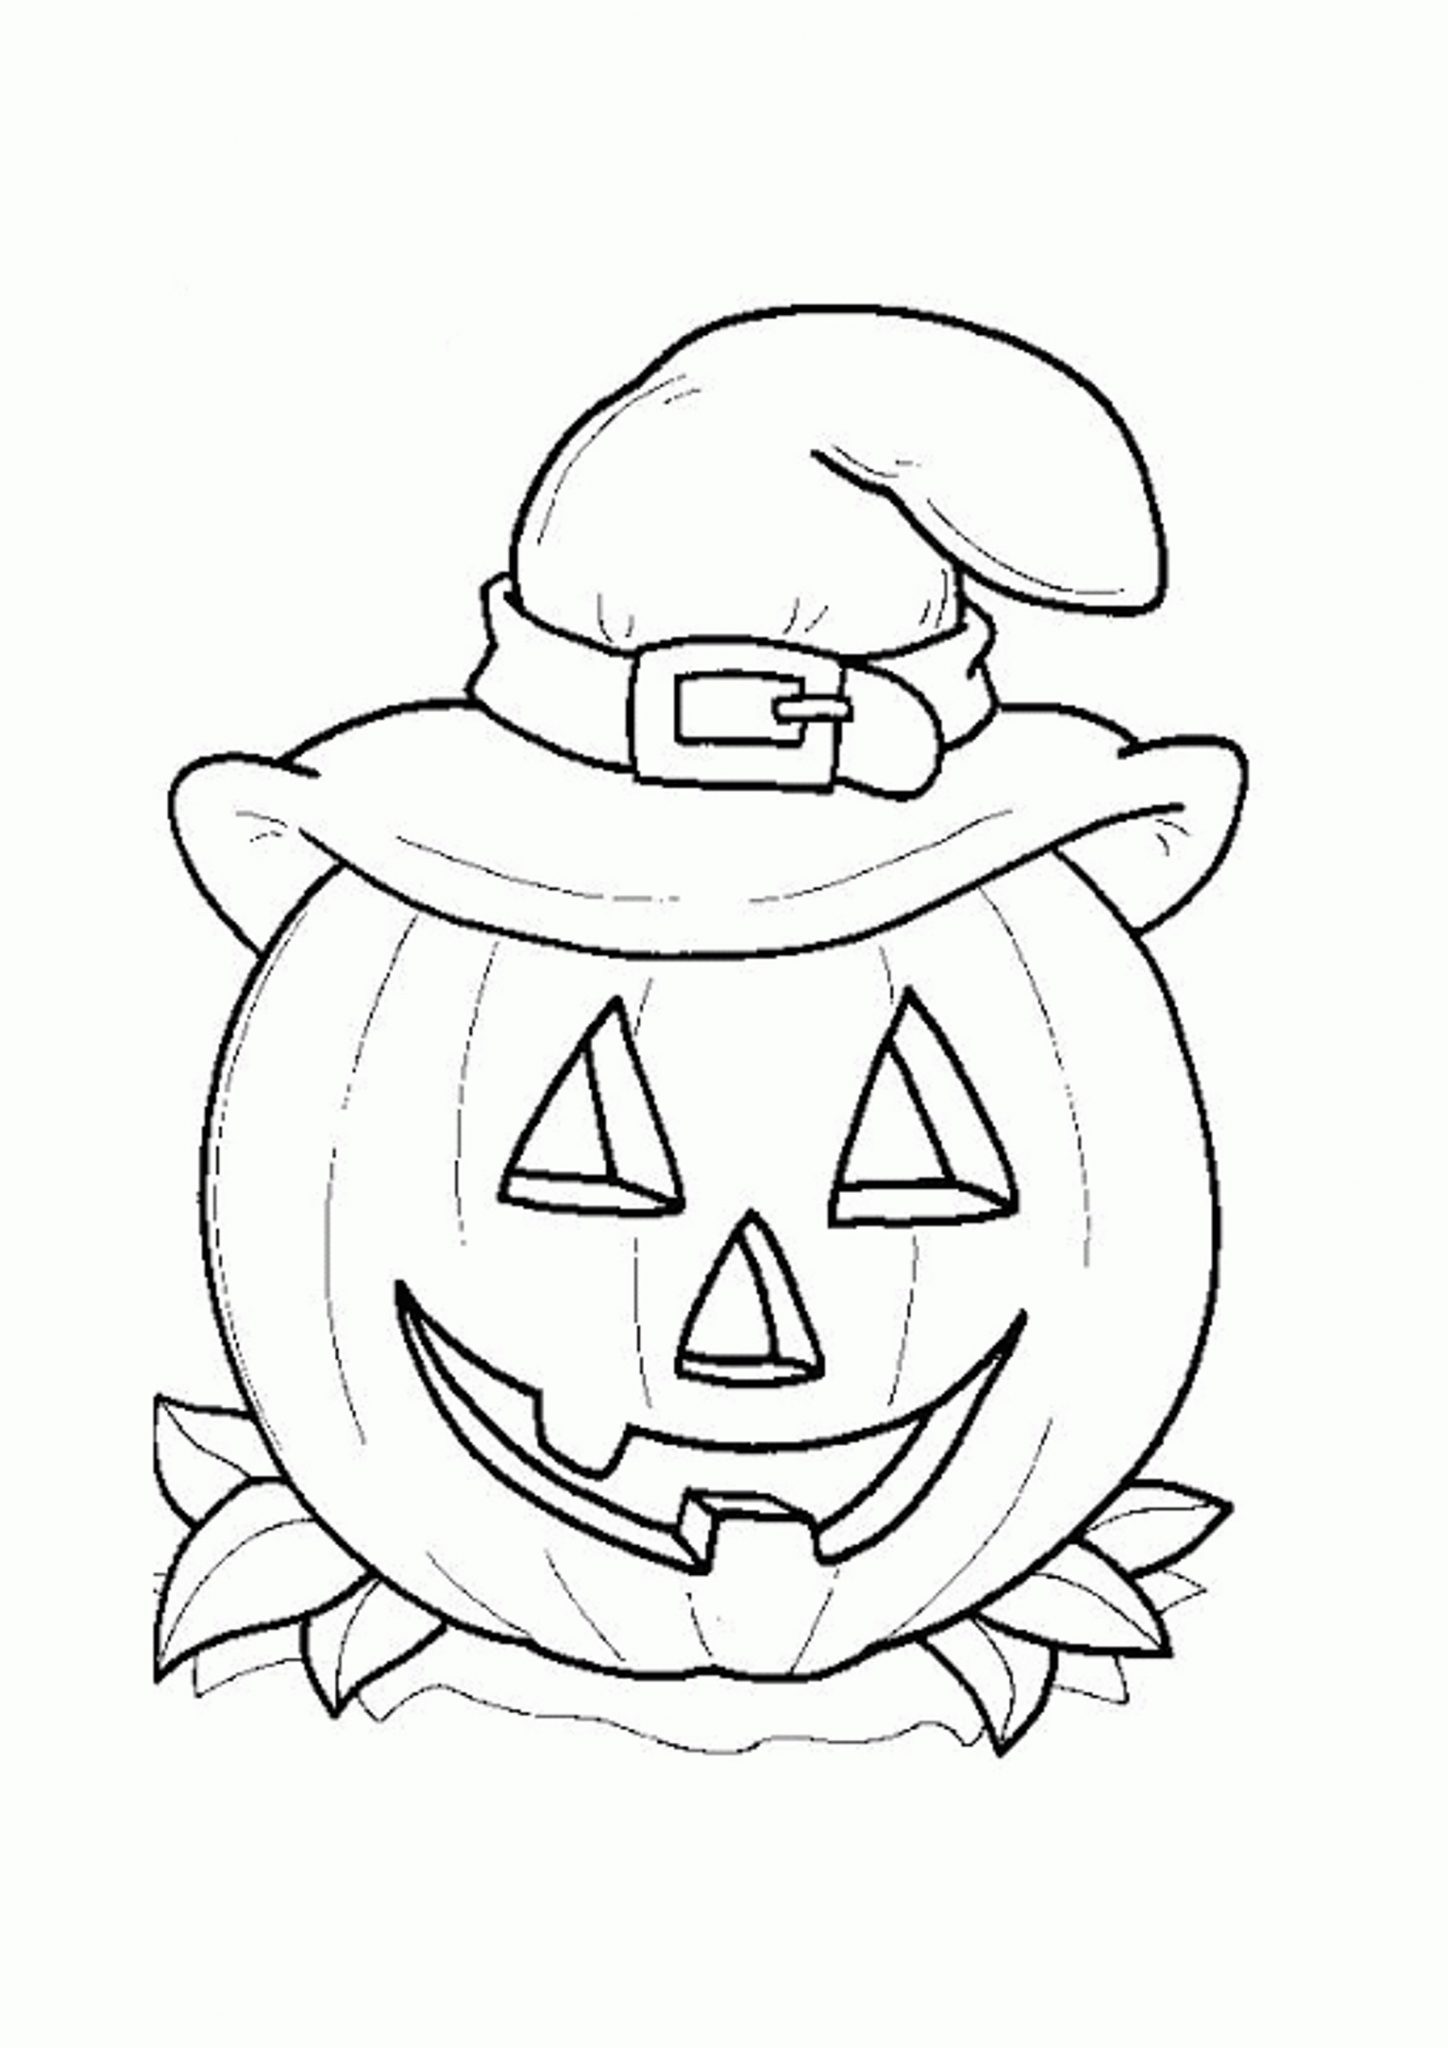 pumpkin-coloring-pages-preschoolers- | | BestAppsForKids.com